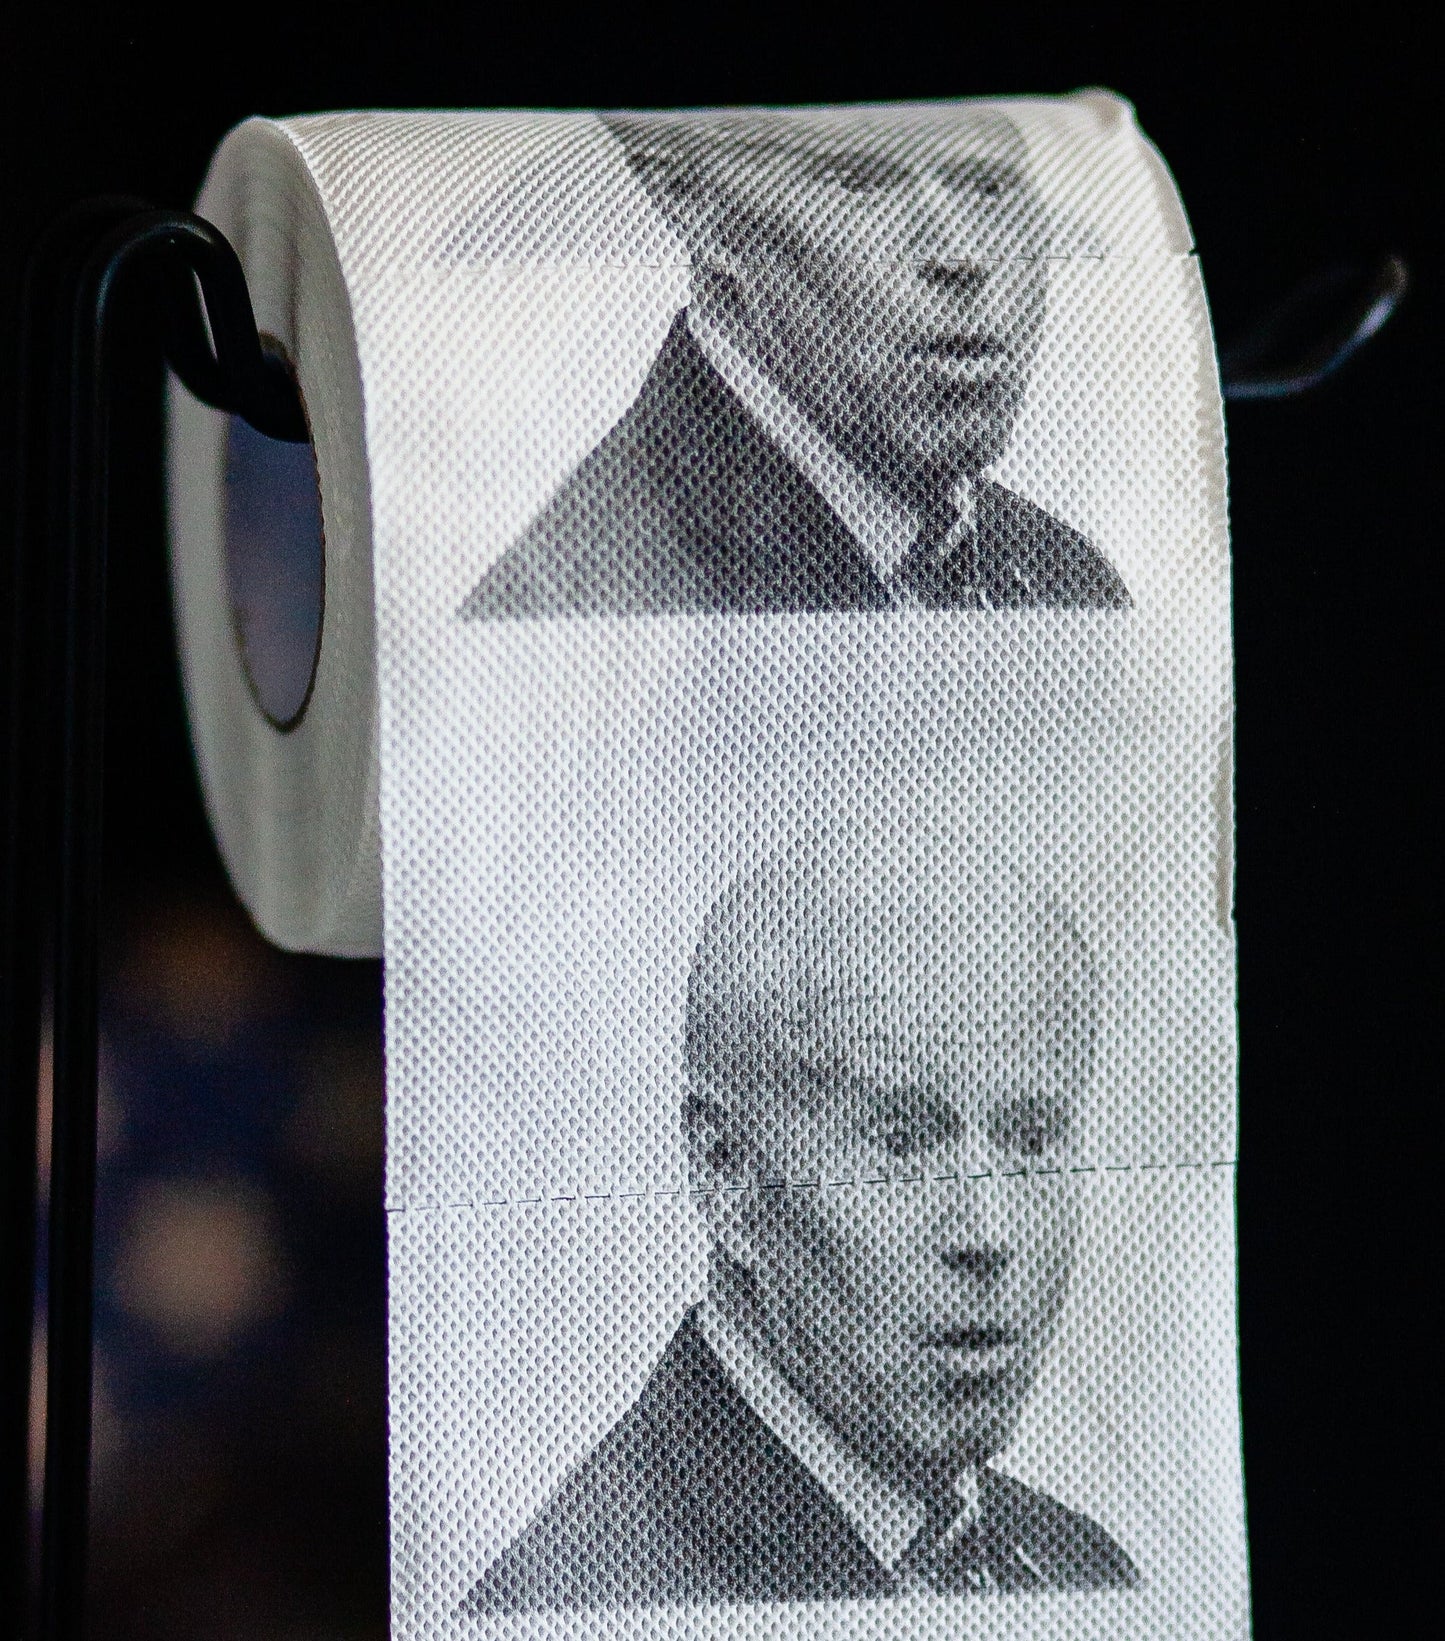 Sleepy Joe Biden Toilet Paper Rolls | 5-Pack